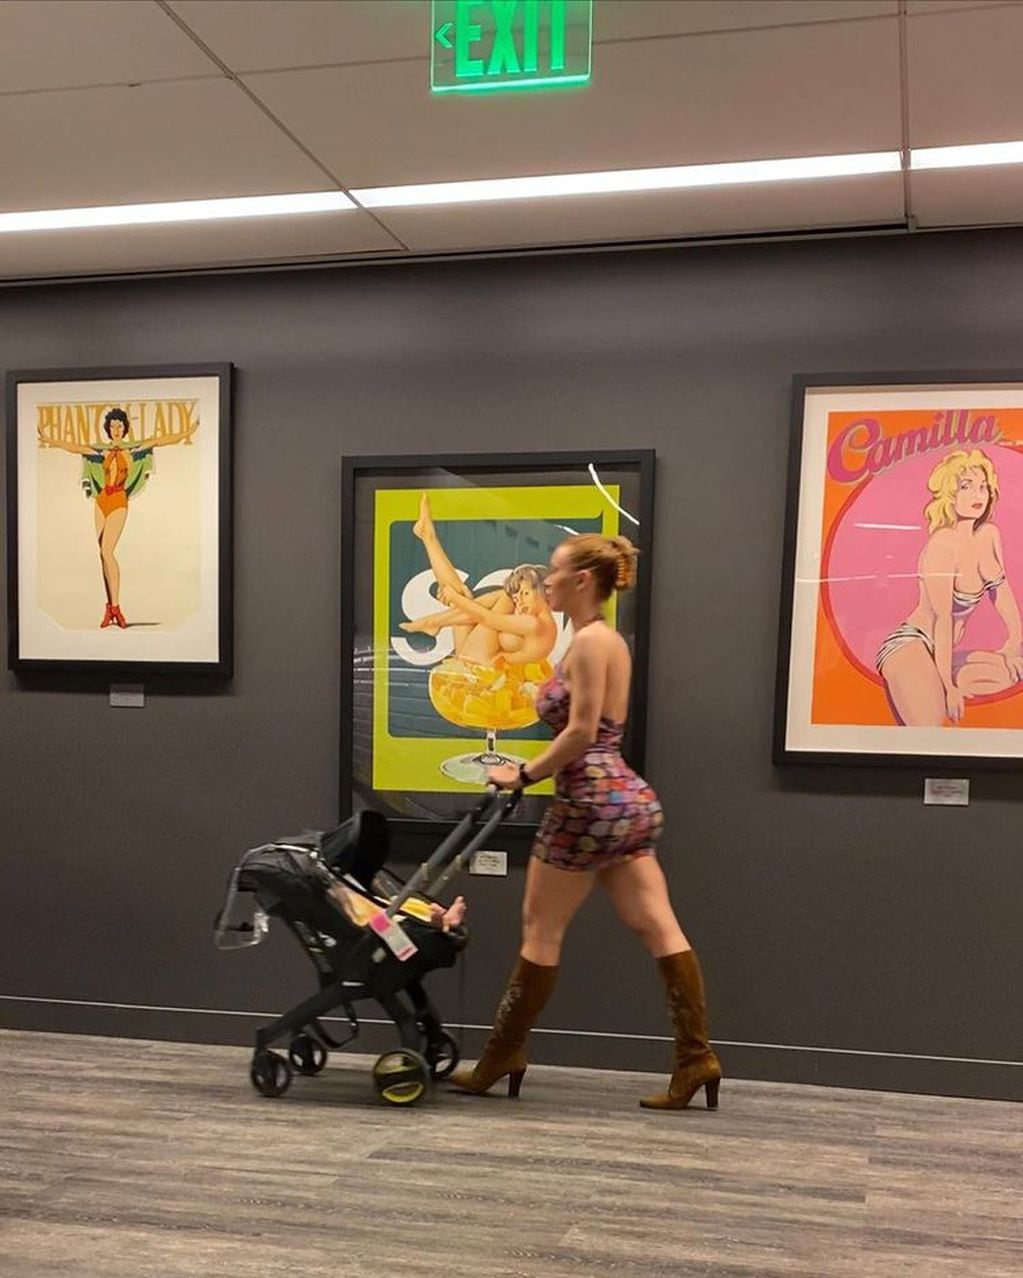 Lana Rhoades paseando con su bebe por los pasillos de Playboy.